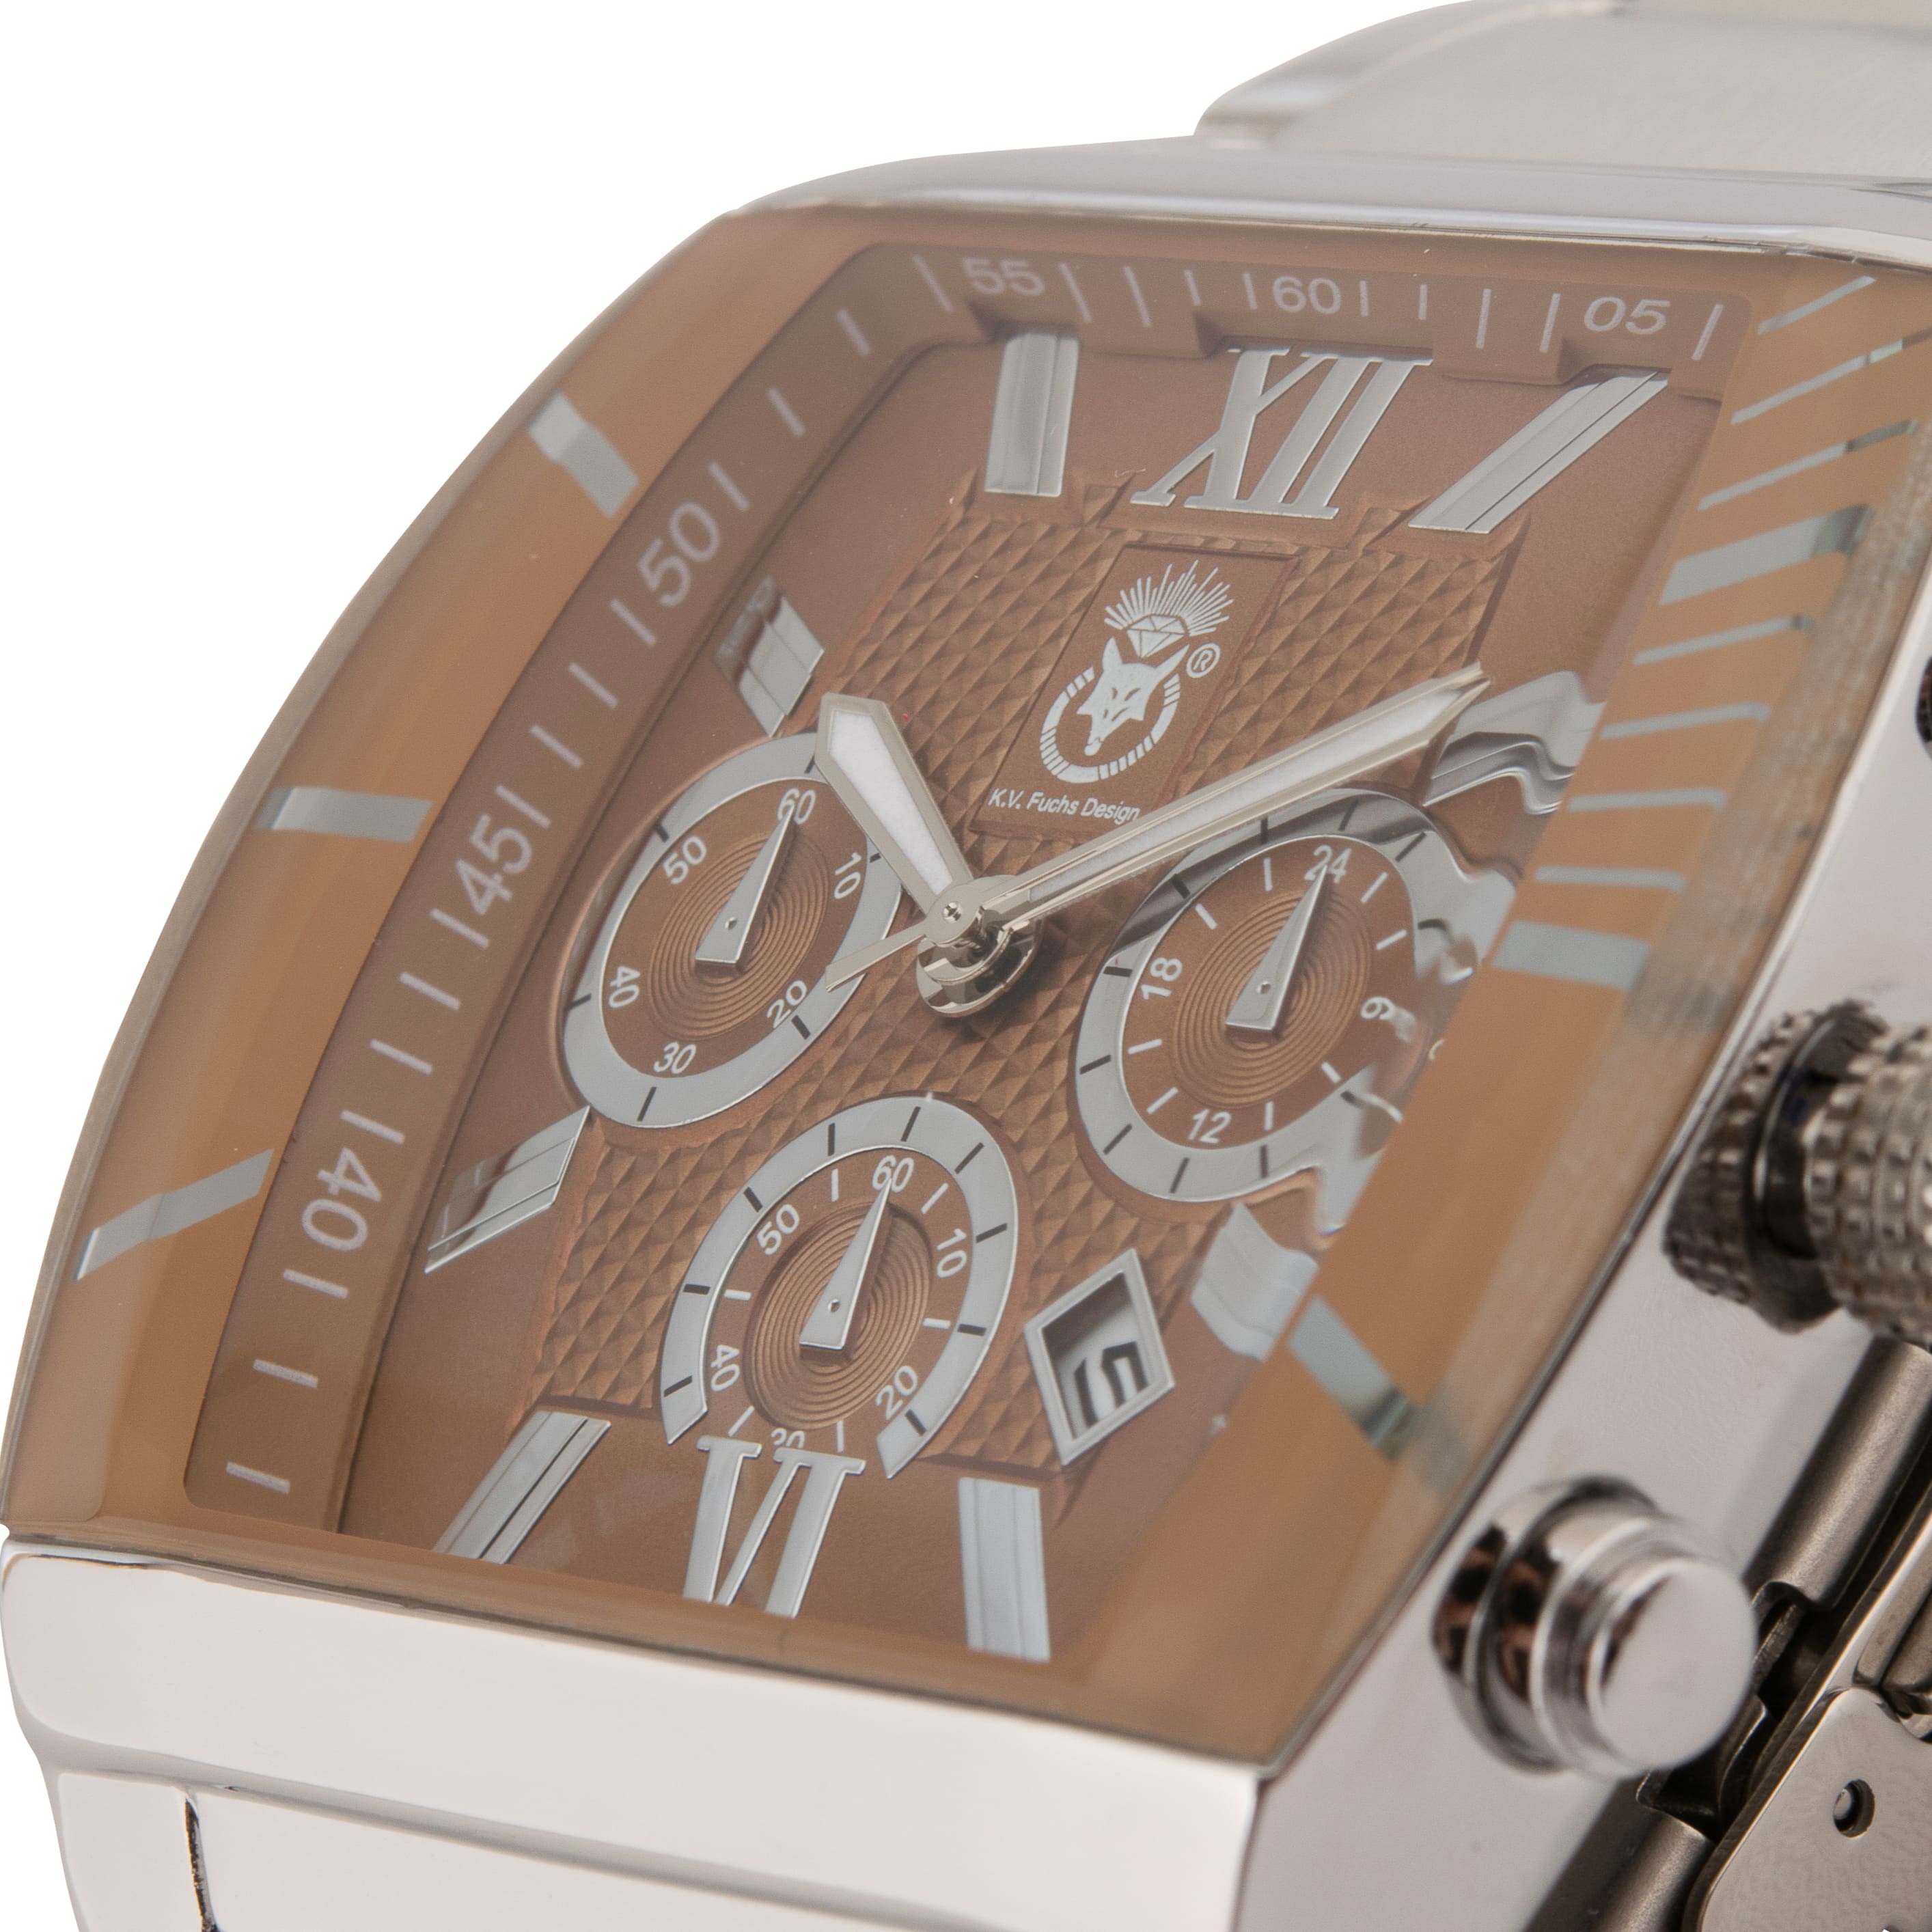 K.V. Fuchs Design Herren Quarzuhr analog Armbanduhr mit Faltschließe in braun, silber mit Edelstahlarmband in silber »U-99-01-Braun-Silber«